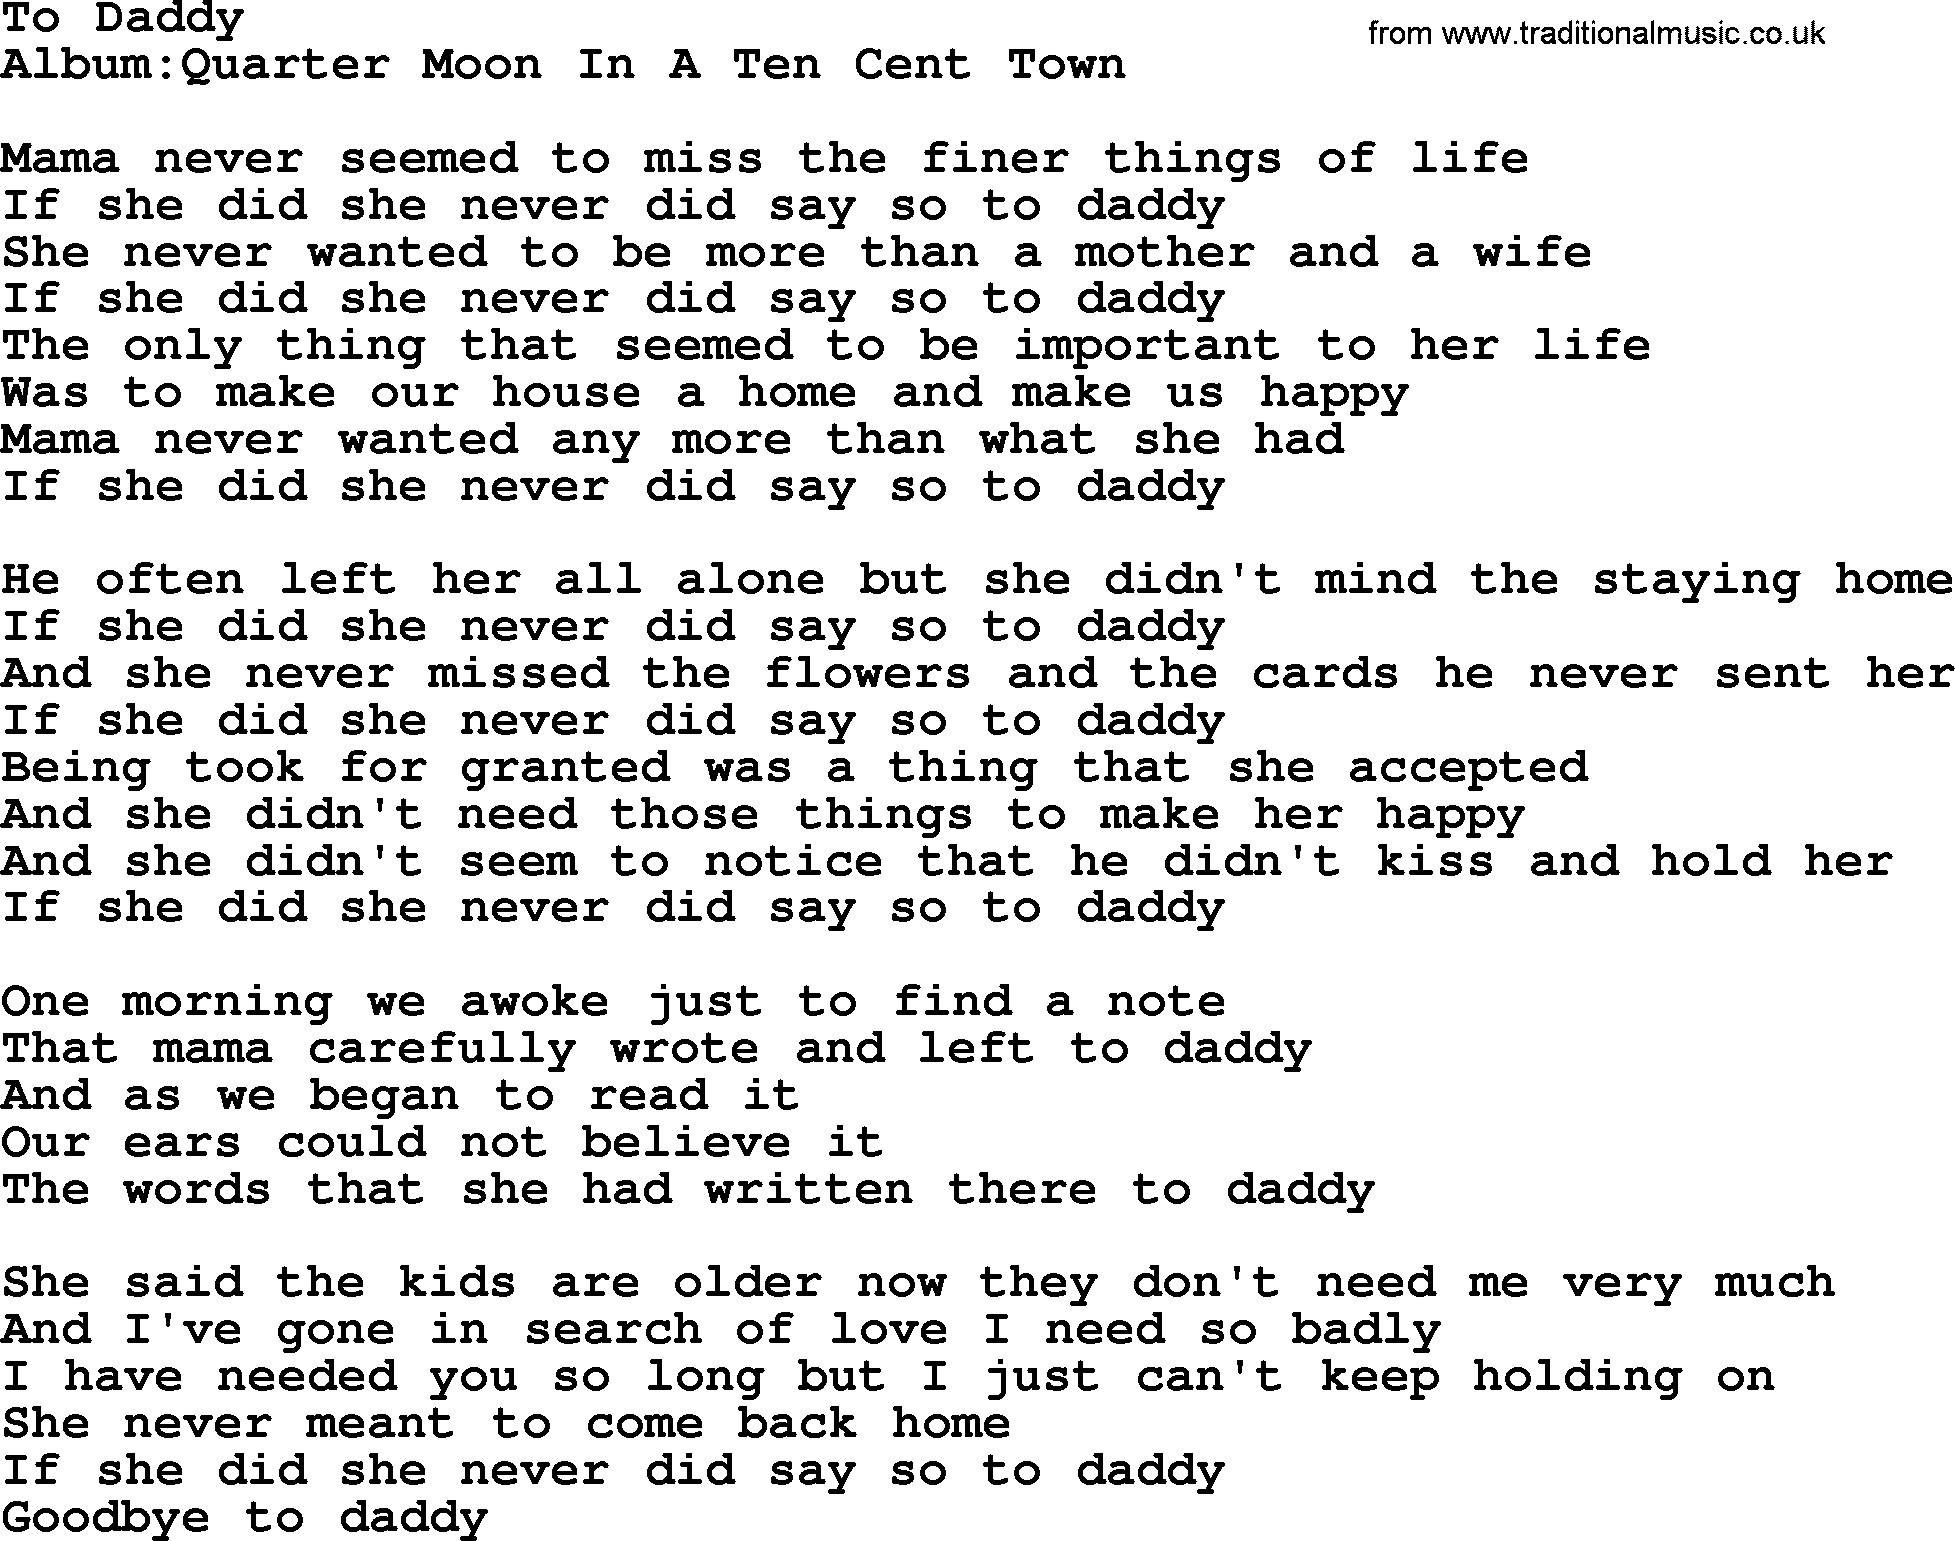 Emmylou Harris song: To Daddy lyrics